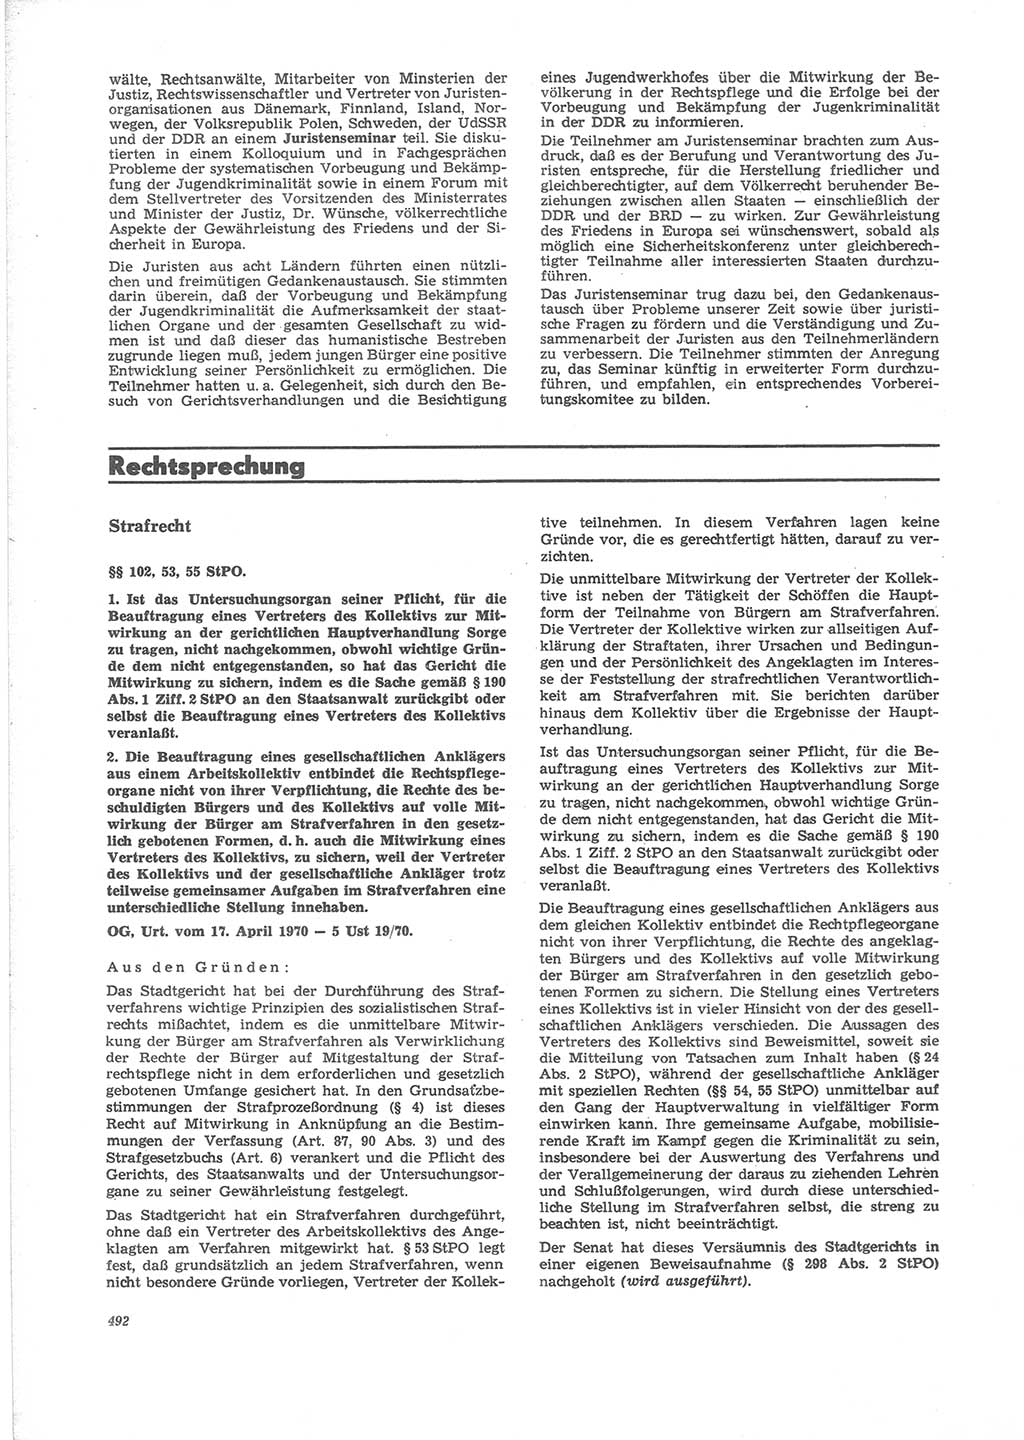 Neue Justiz (NJ), Zeitschrift für Recht und Rechtswissenschaft [Deutsche Demokratische Republik (DDR)], 24. Jahrgang 1970, Seite 492 (NJ DDR 1970, S. 492)